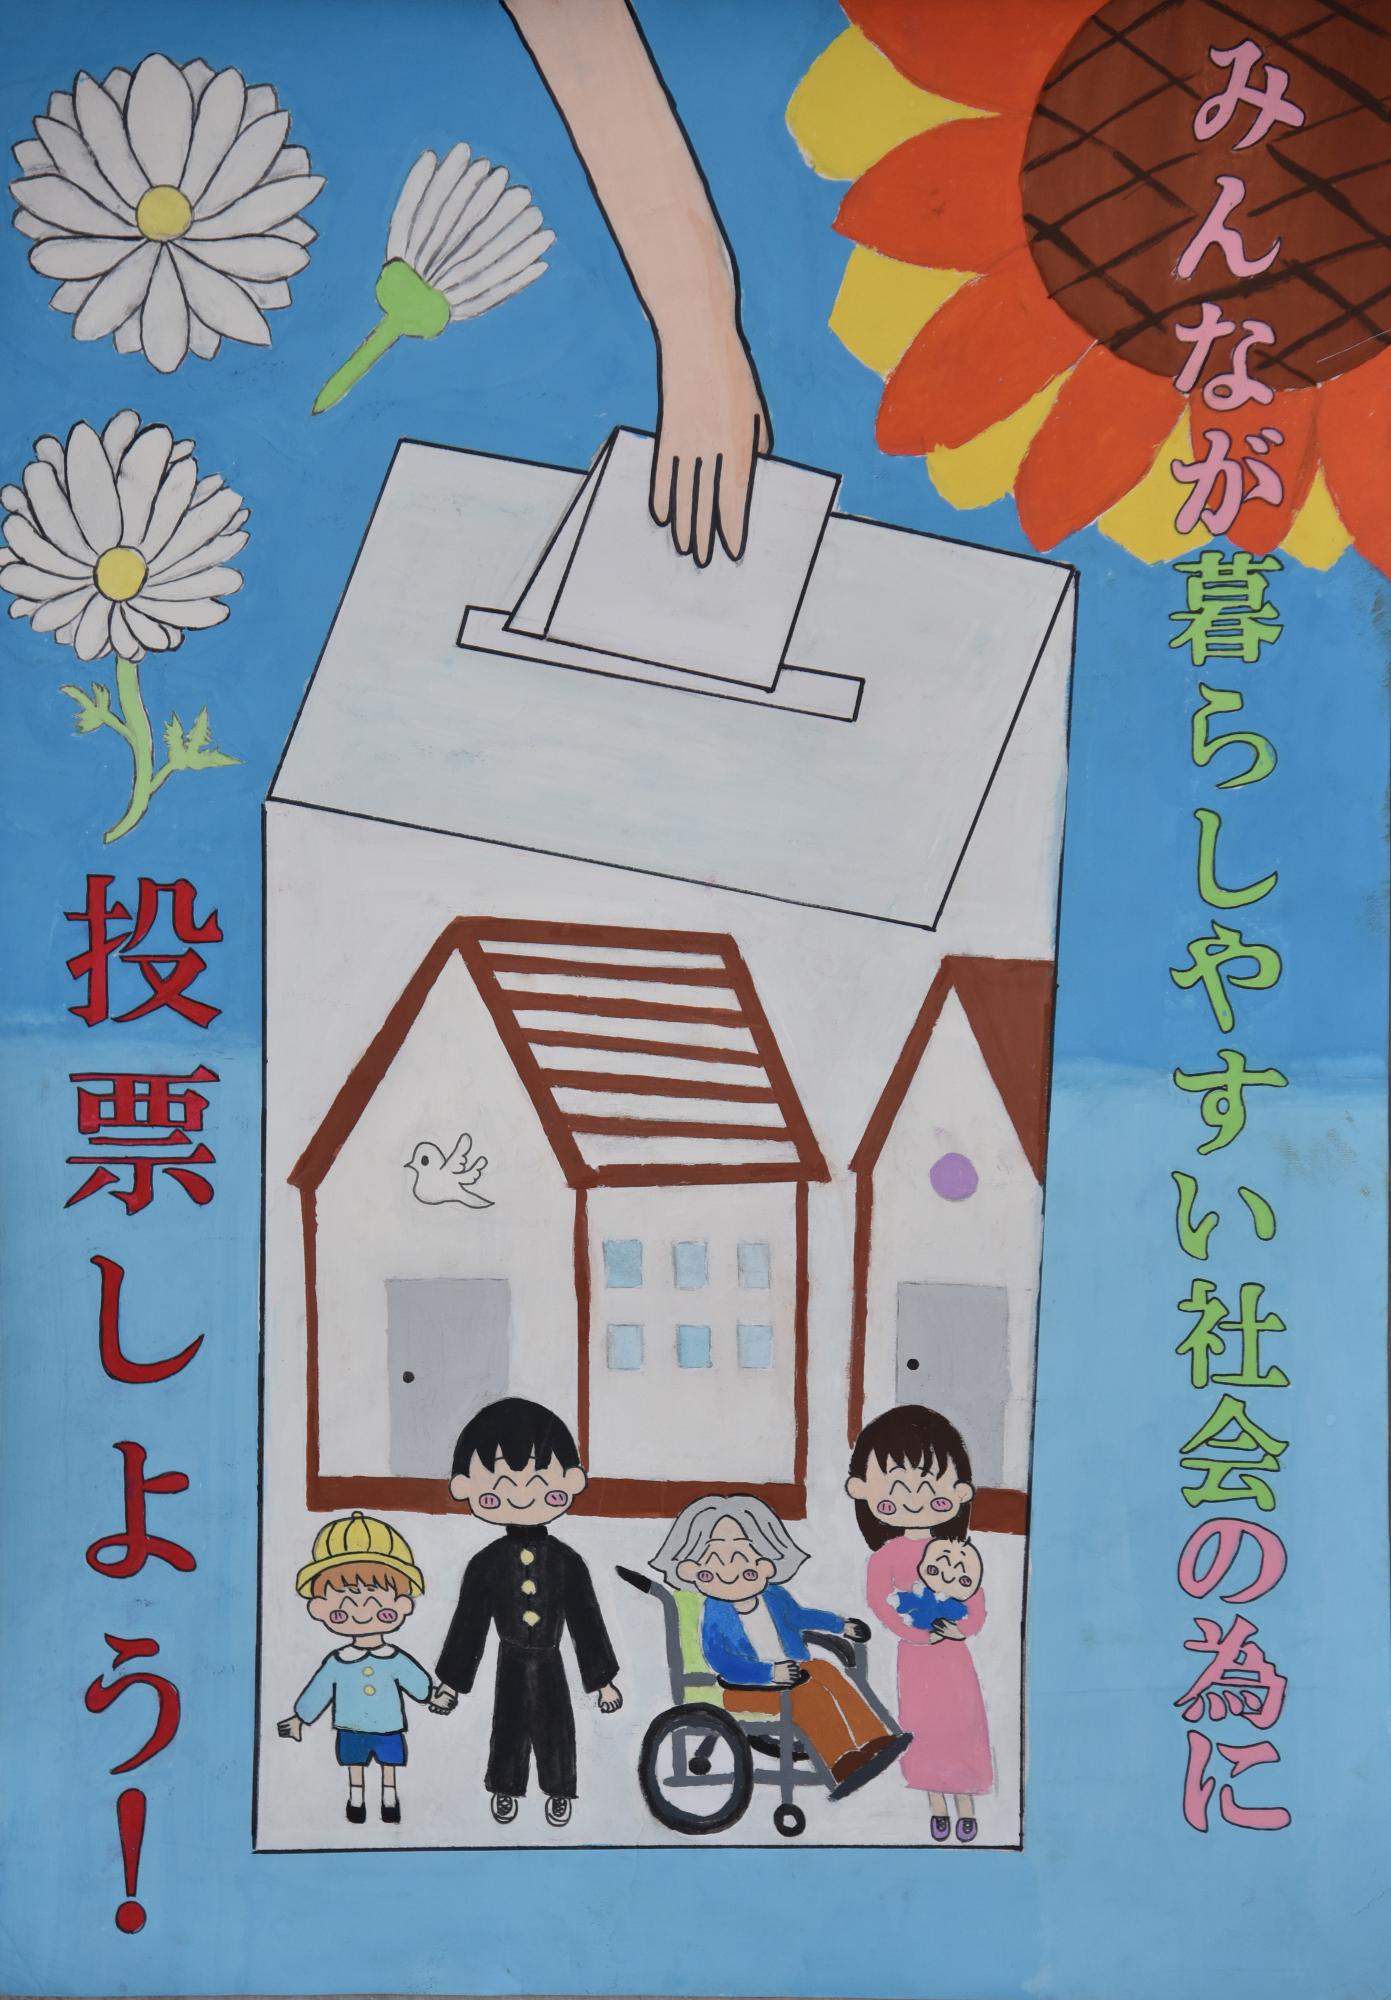 「みんなが暮らしやすい社会の為に投票しよう」花の背景に投票箱に家や人々が描かれていて、そこに投票しようとしているポスター